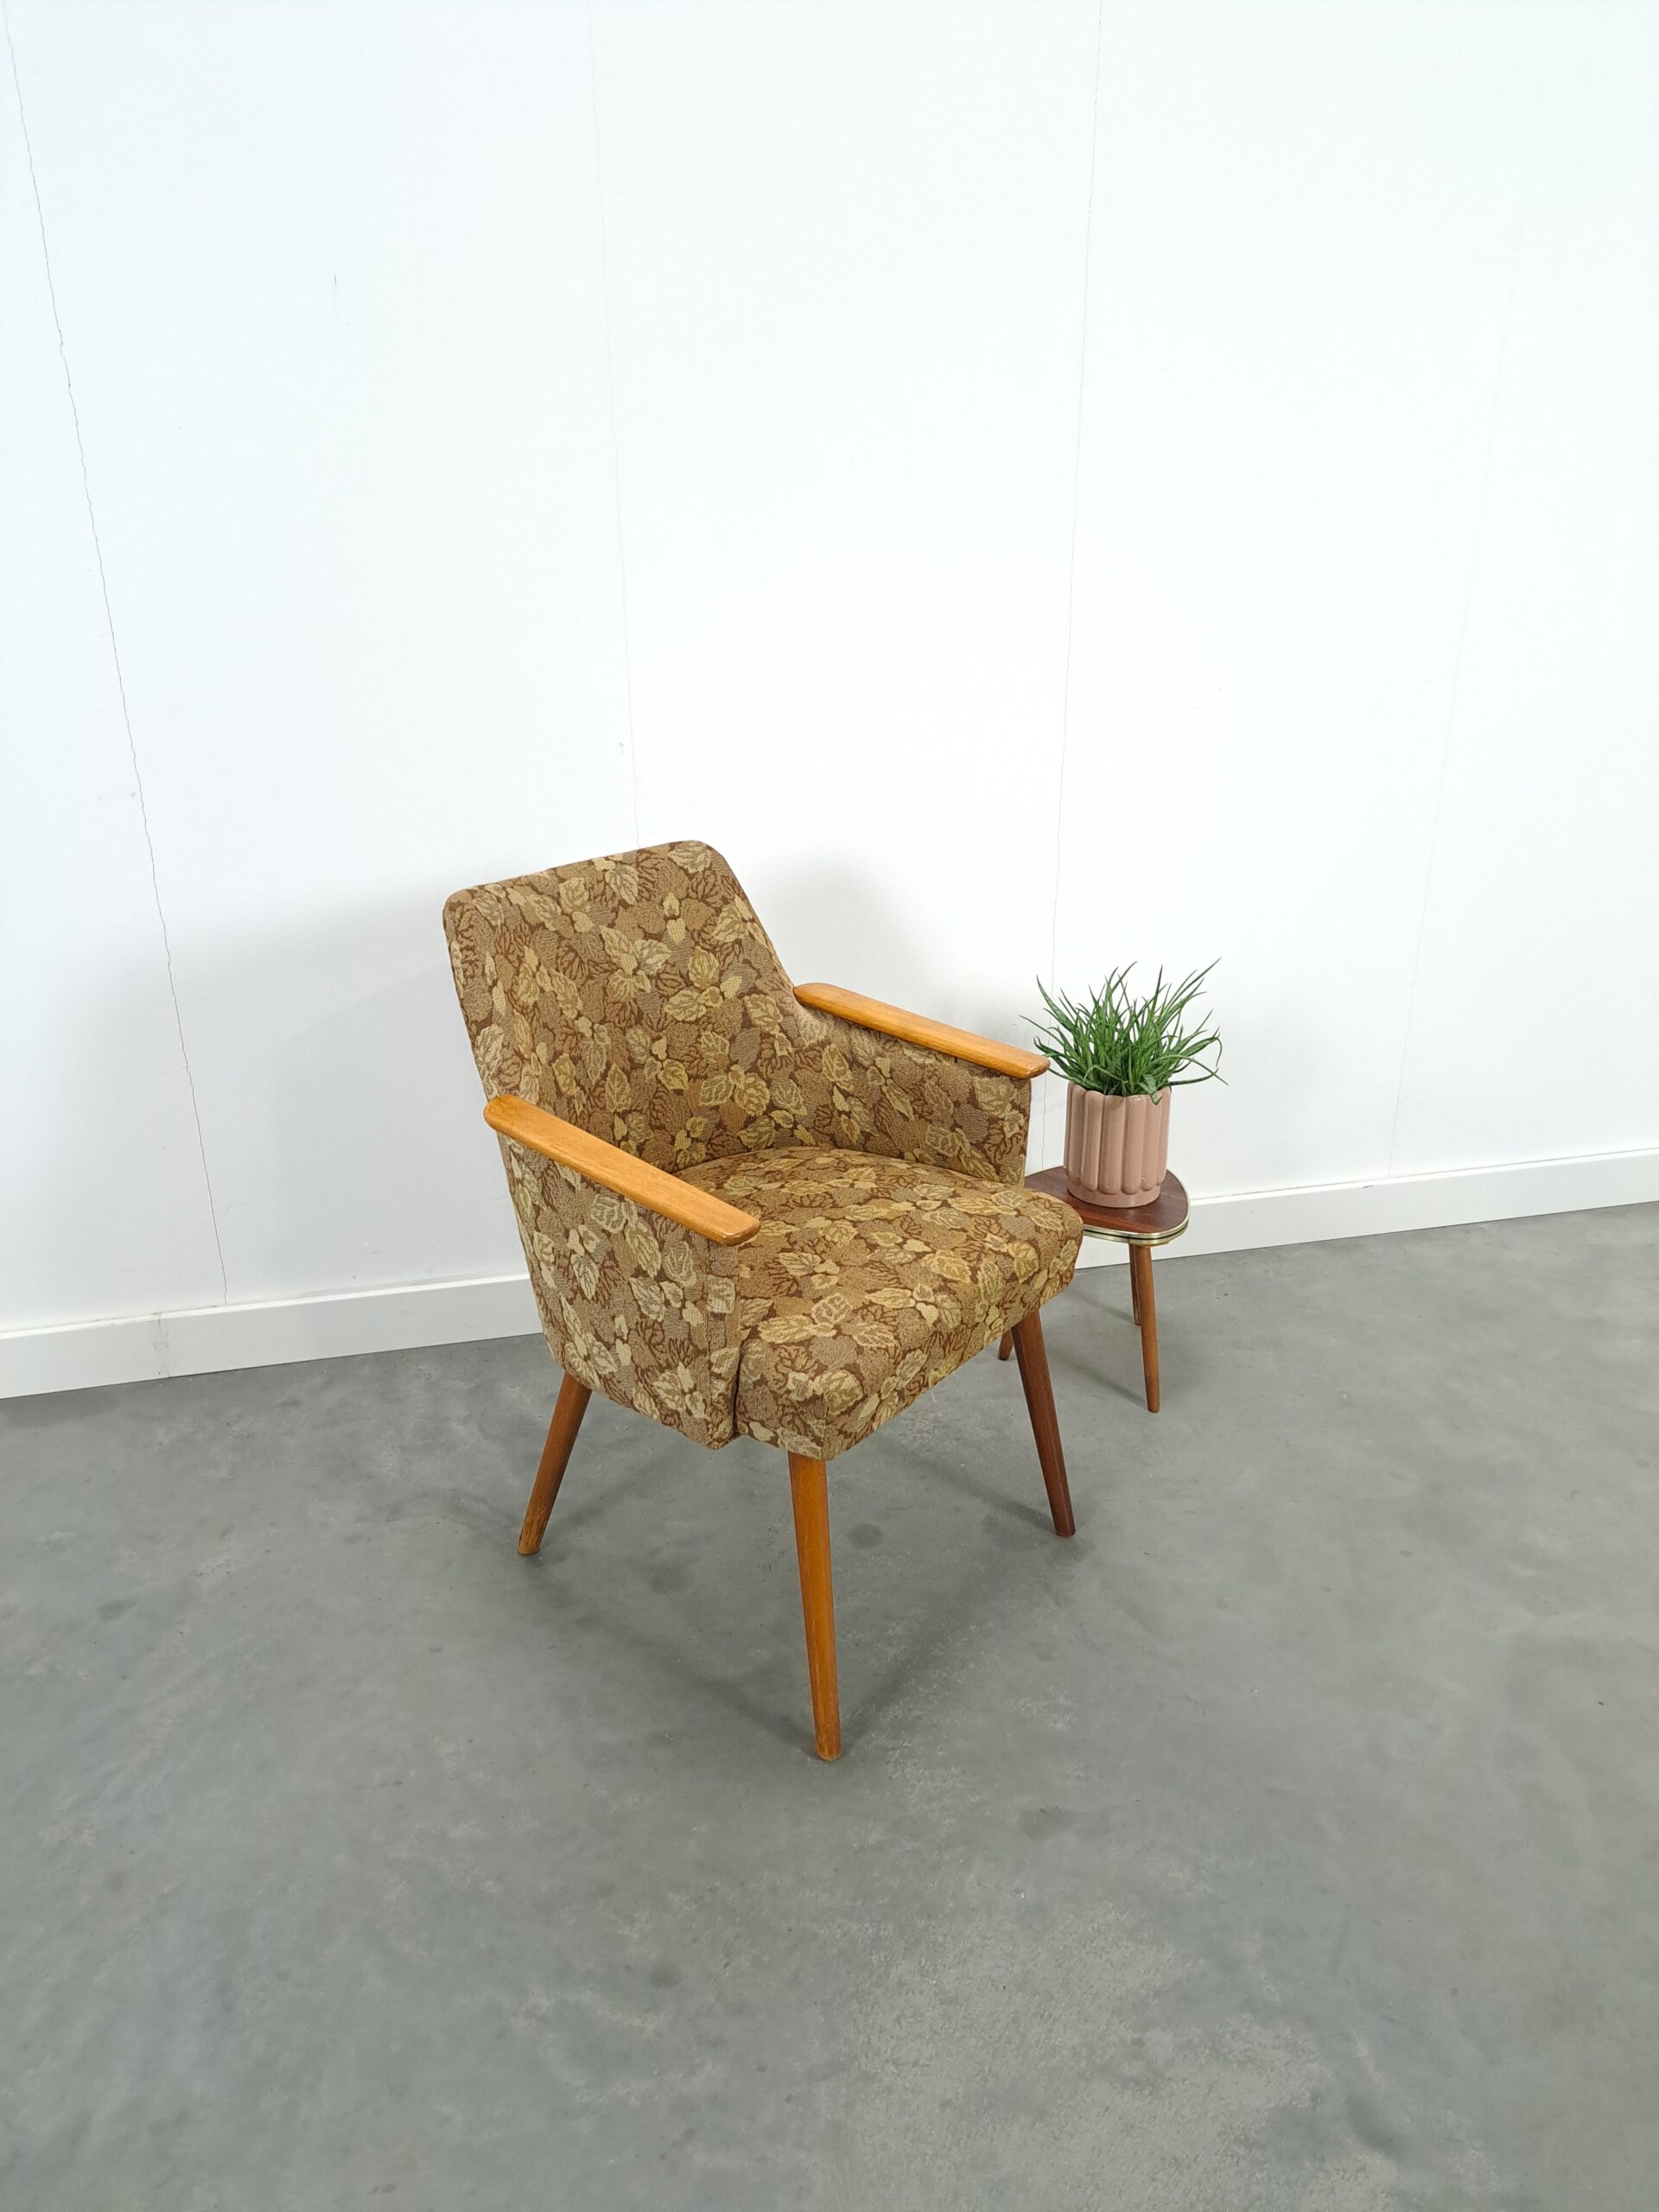 Vintage stoffen fauteuil met houten leuning en bladeren, stoel